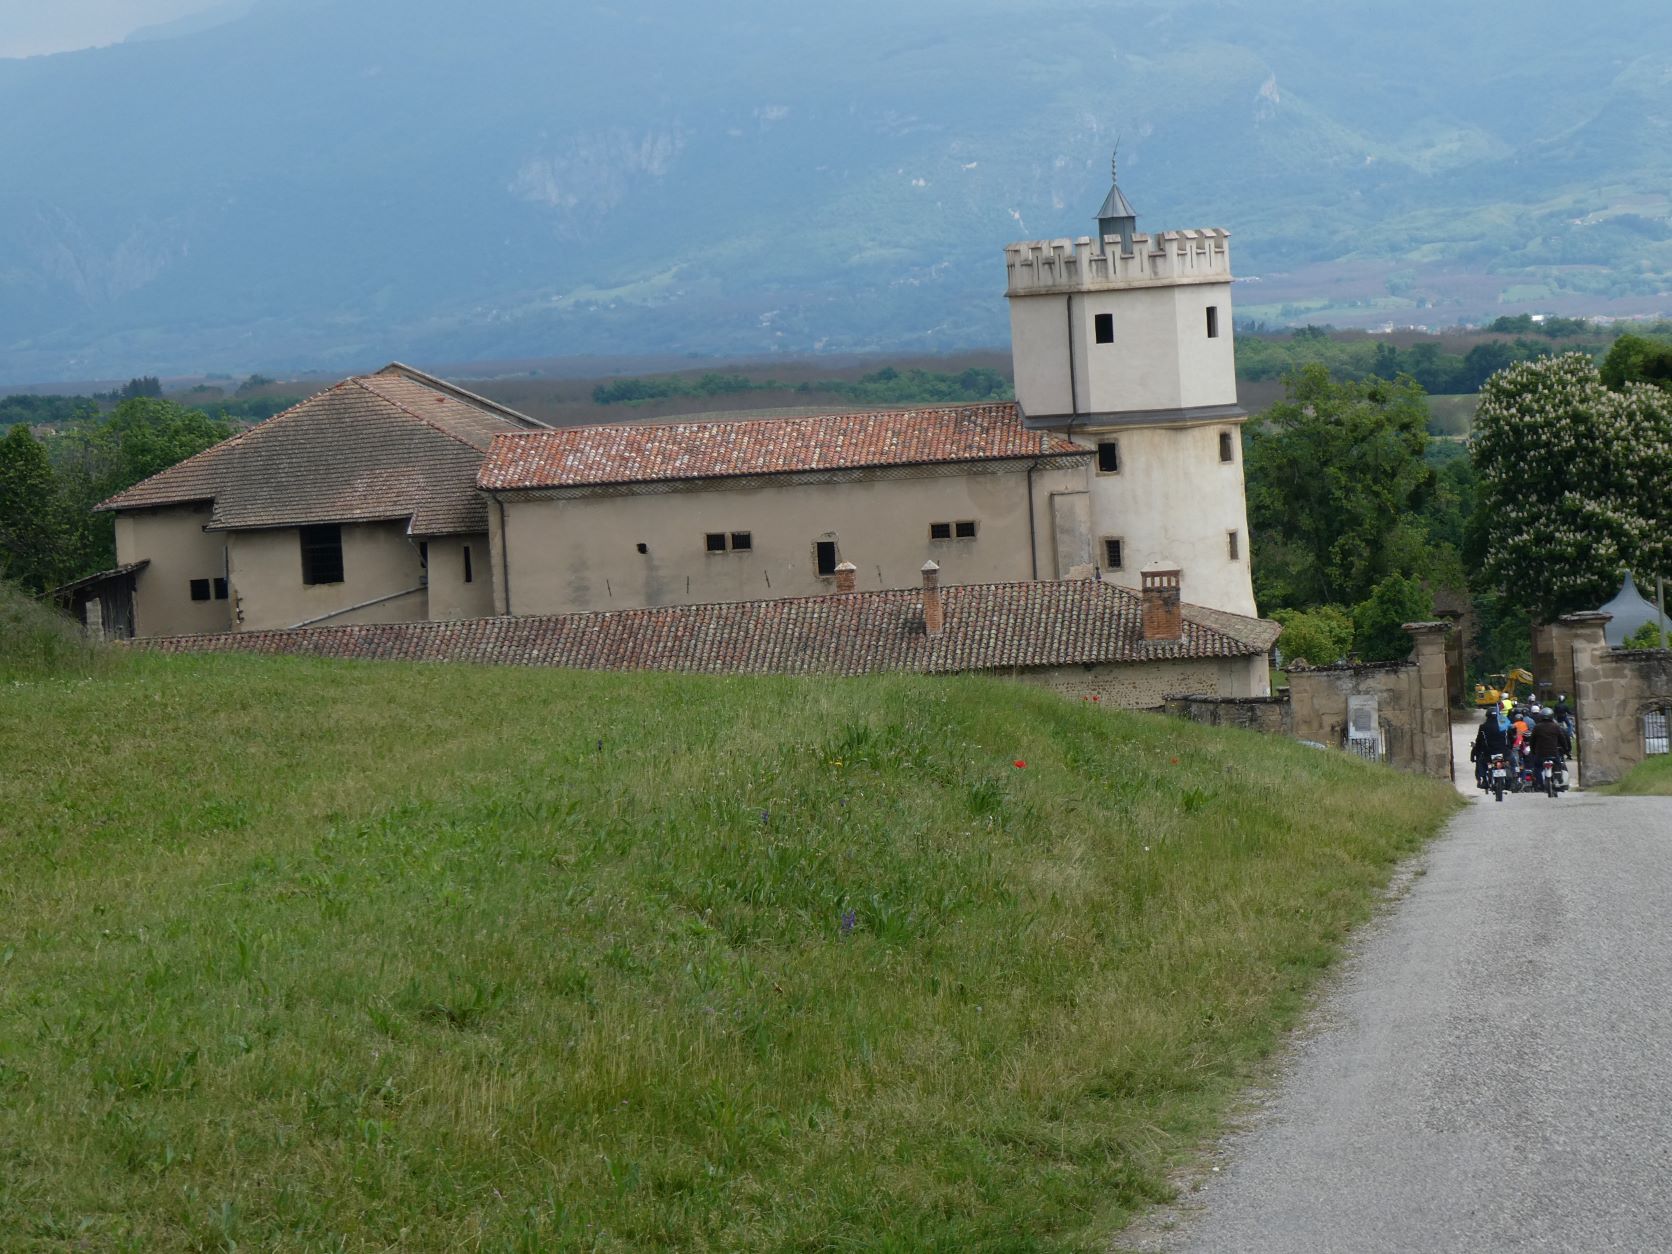 Arrivée du groupe au château de l'Arthaudière situé sur la commune de St Bonnet de Chavagne à 750 m d'altitude.